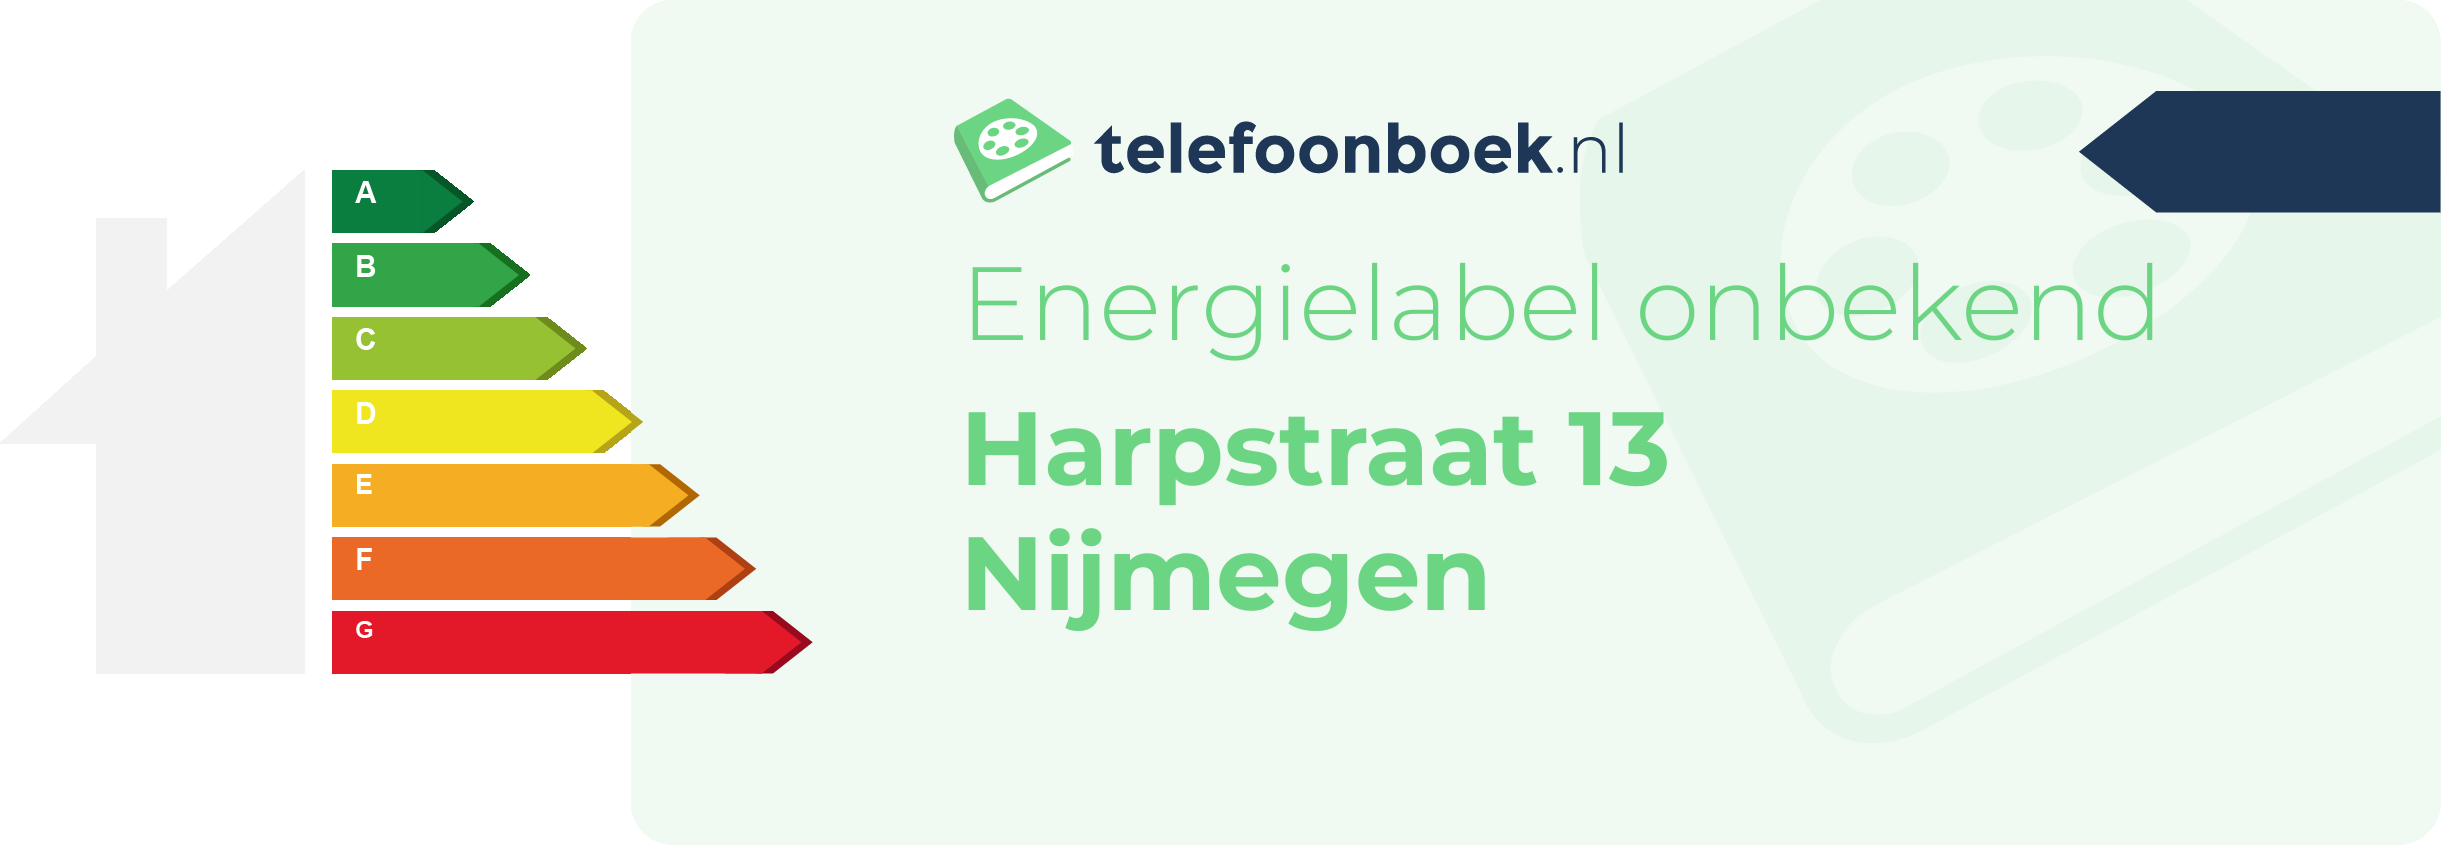 Energielabel Harpstraat 13 Nijmegen